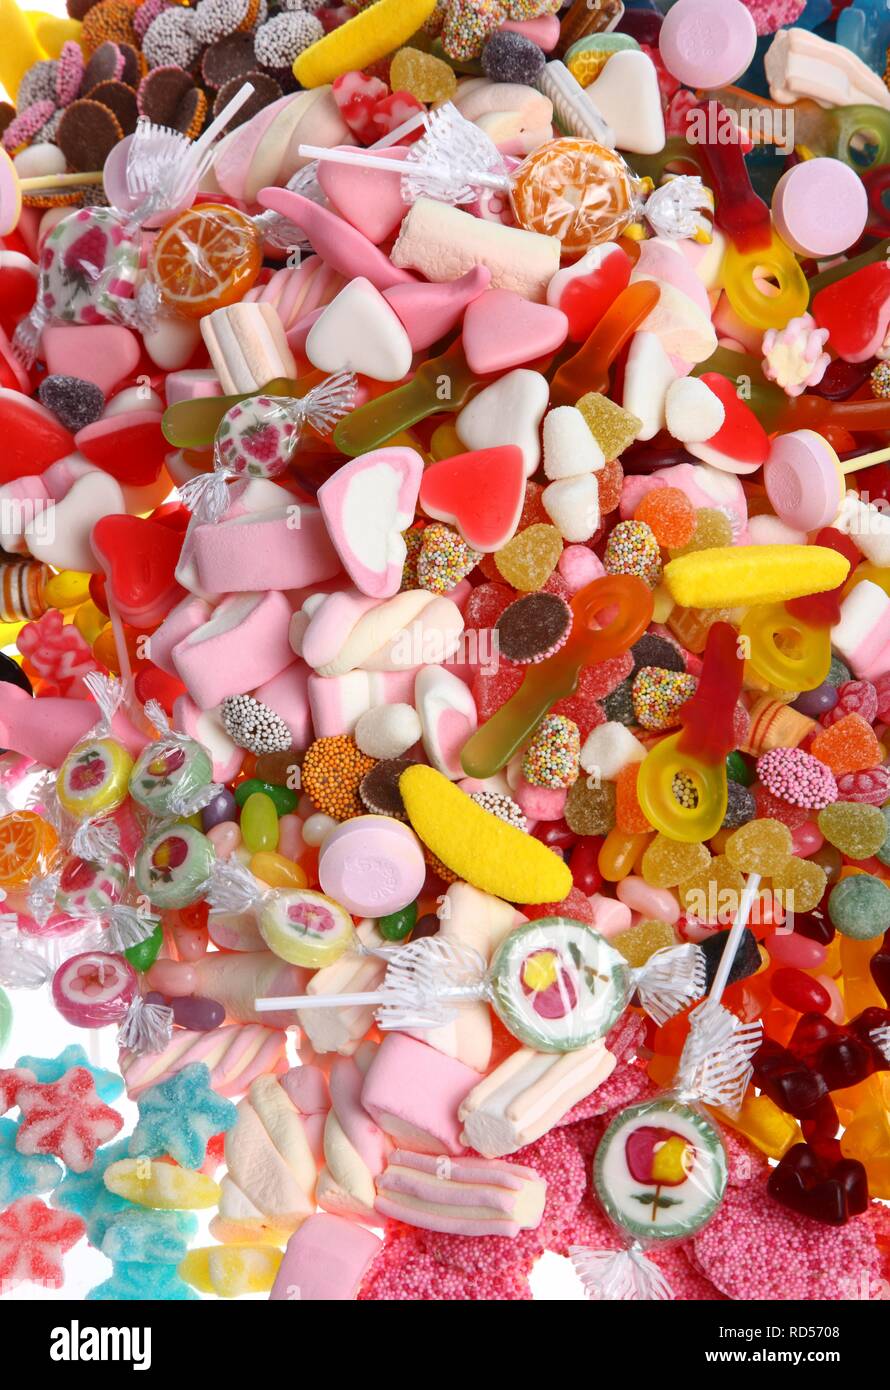 Klare Plastiktüten mit einer Vielzahl von Fruchtgummis, Marshmallows, Bonbons, Lutscher, Cookies und Gummibärchen Stockfoto